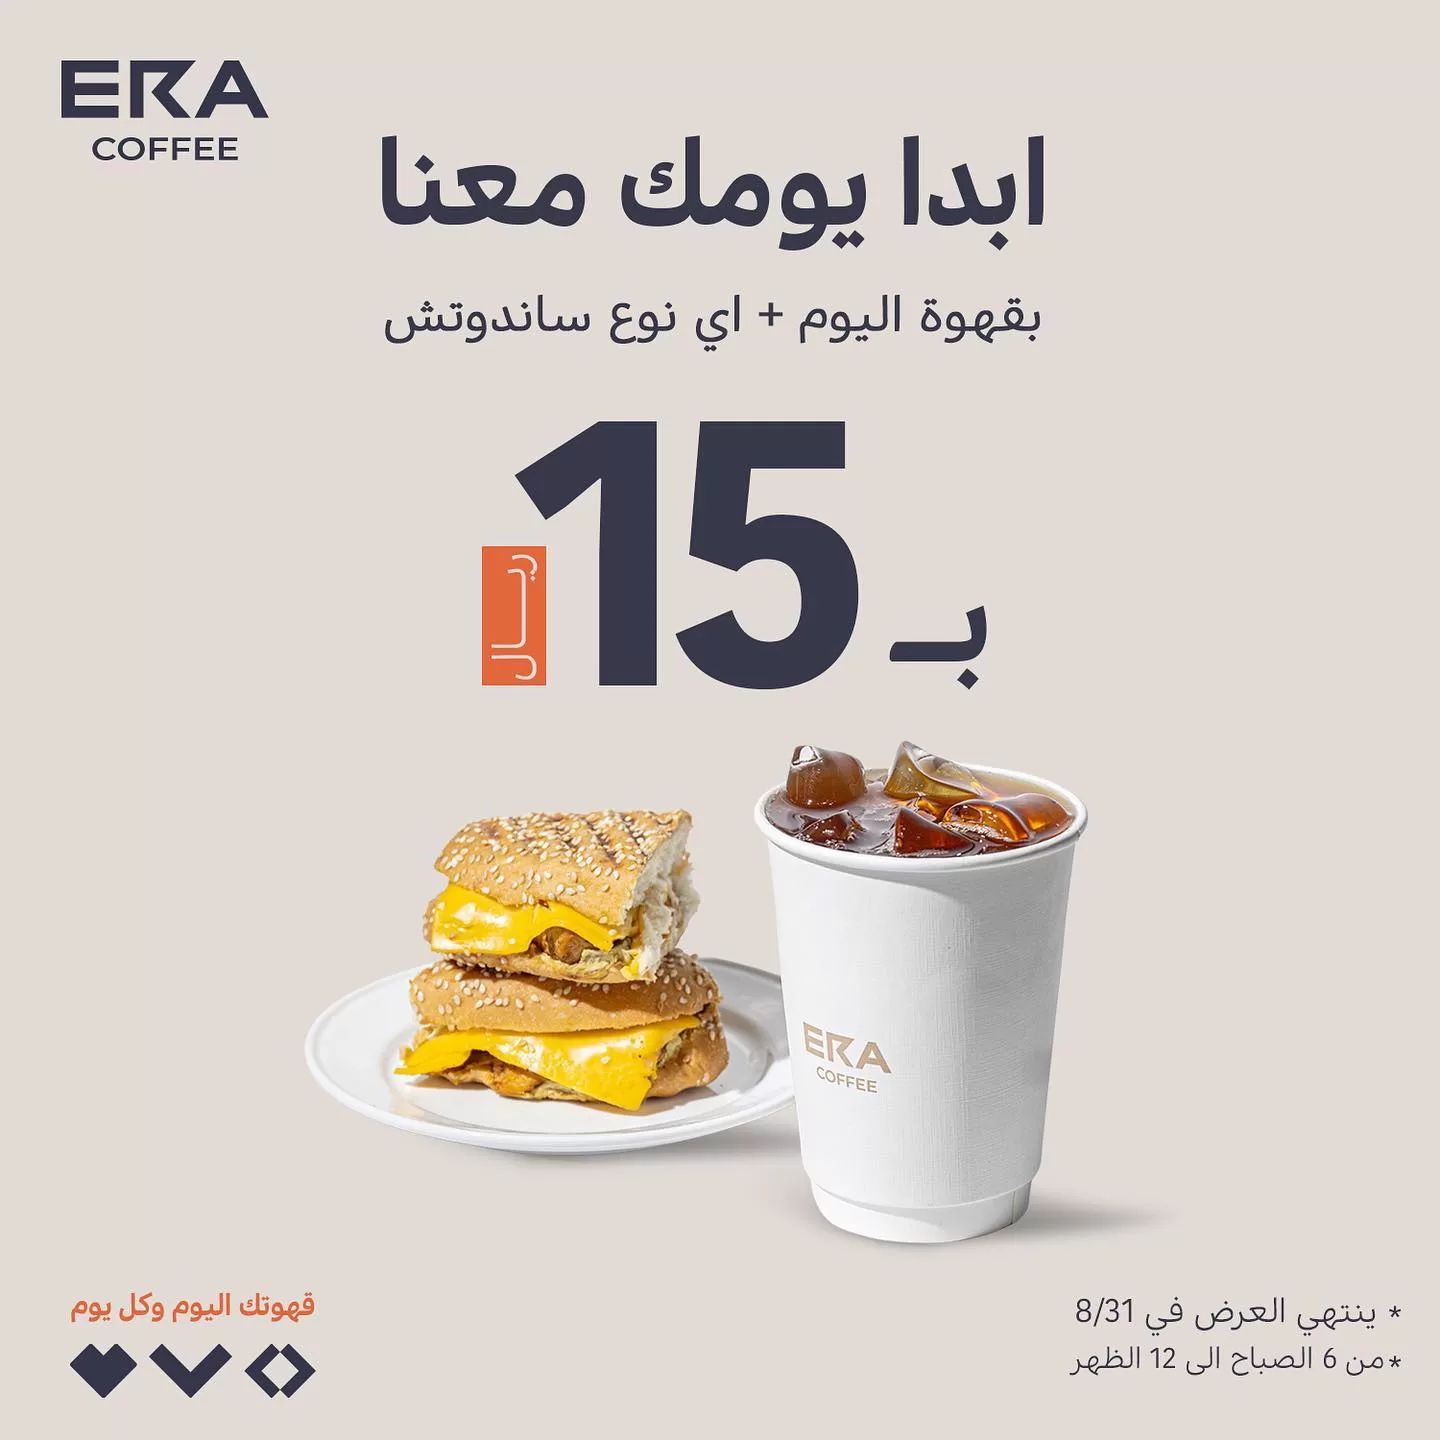 366488106 157670810687202 7700042954039172768 n jpg - عروض مطاعم السعودية اليوم لأشهي الوجبات بأقل الأسعار